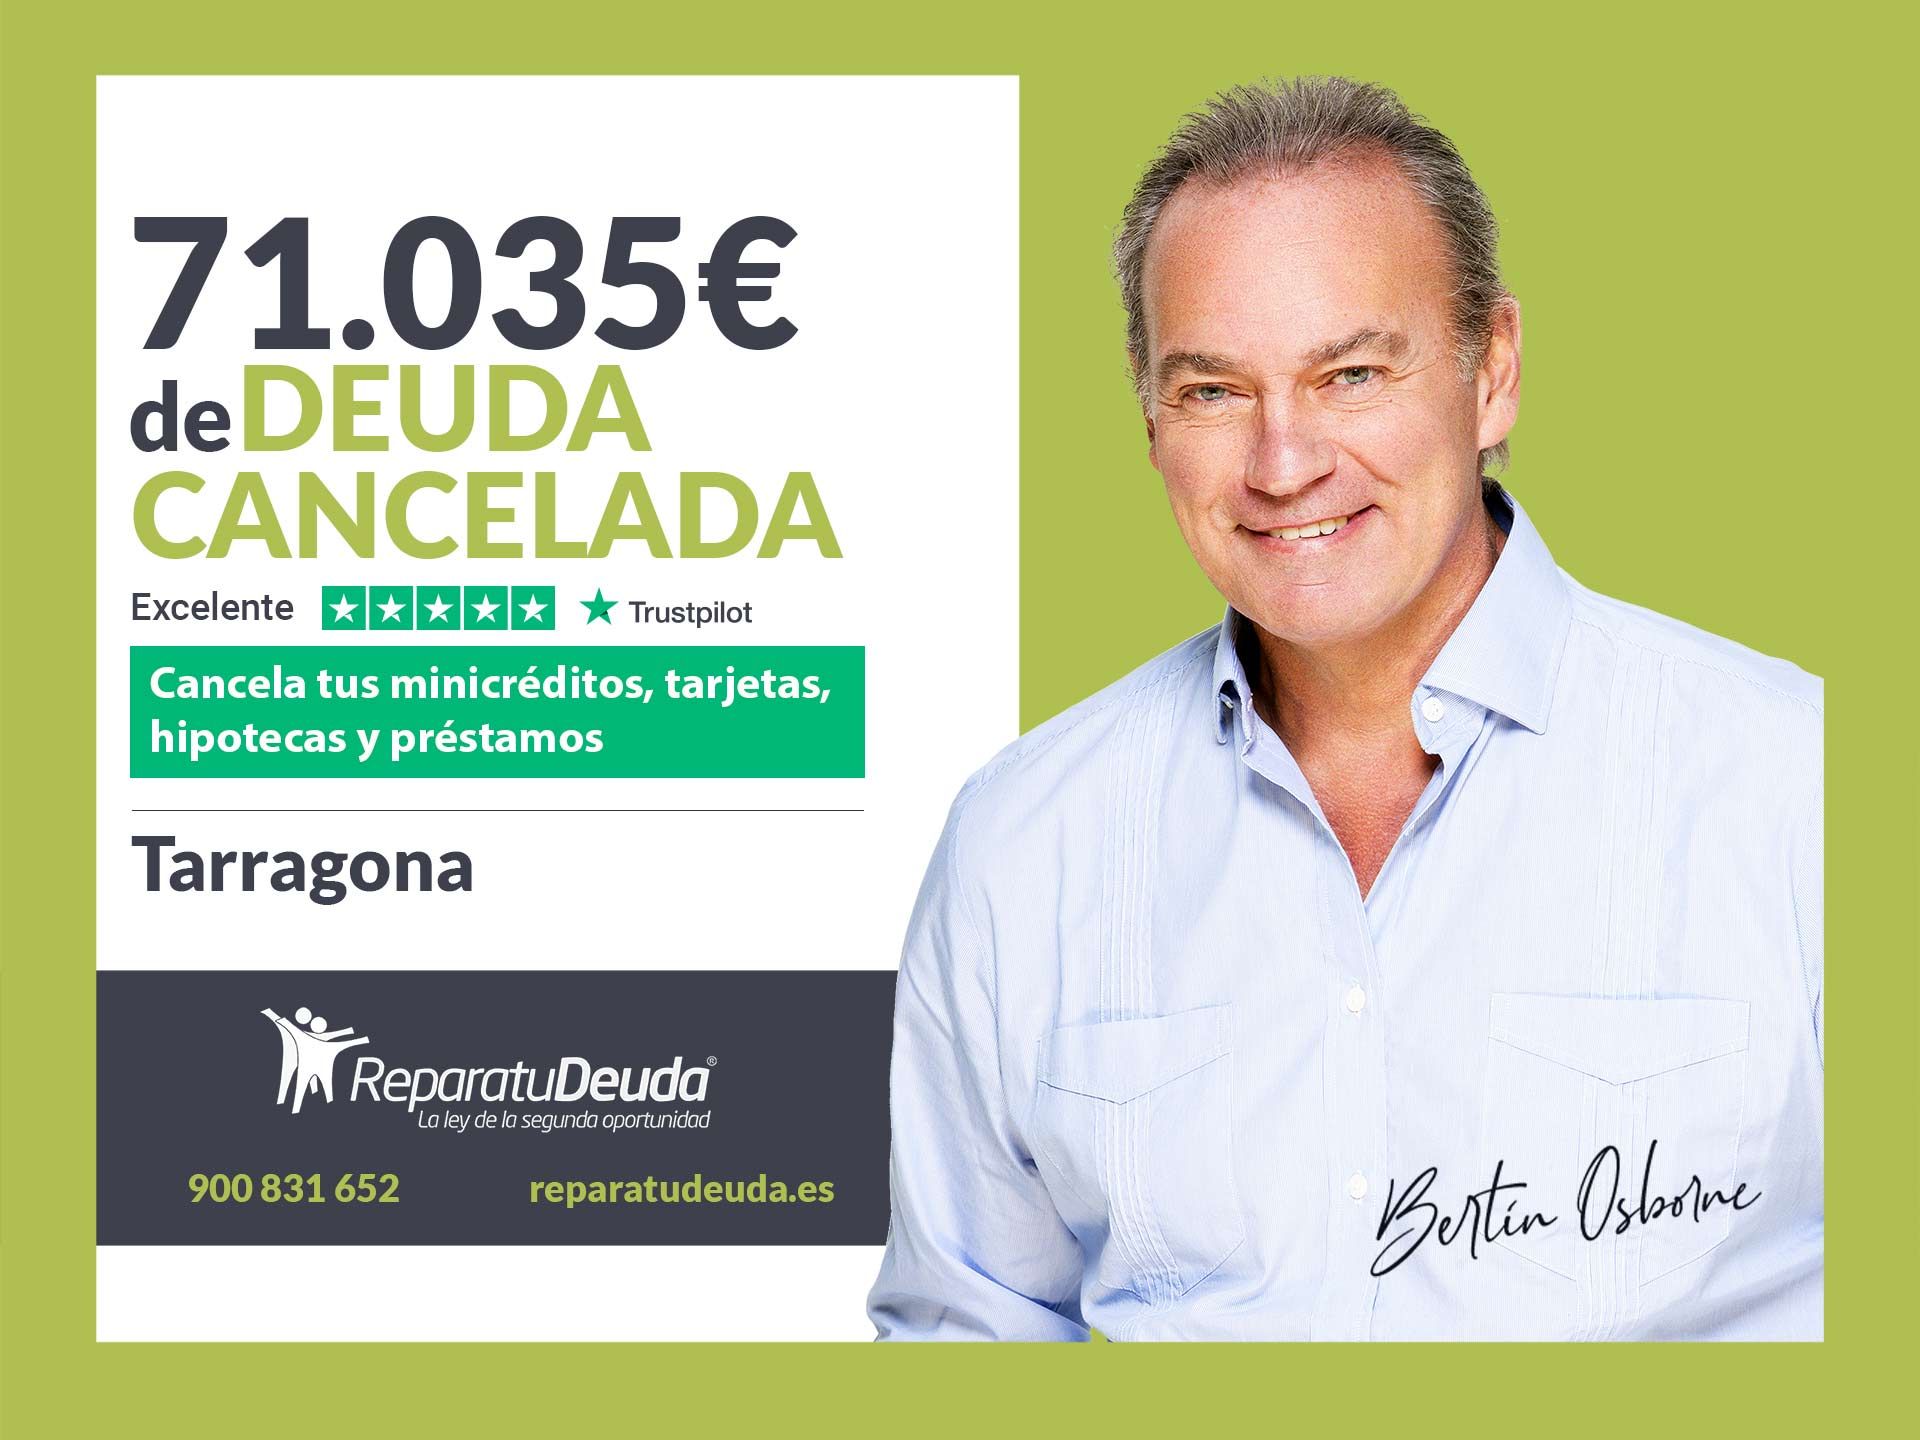 Repara tu Deuda Abogados cancela 71.035? en Tarragona (Catalunya) con la Ley de la Segunda Oportunidad